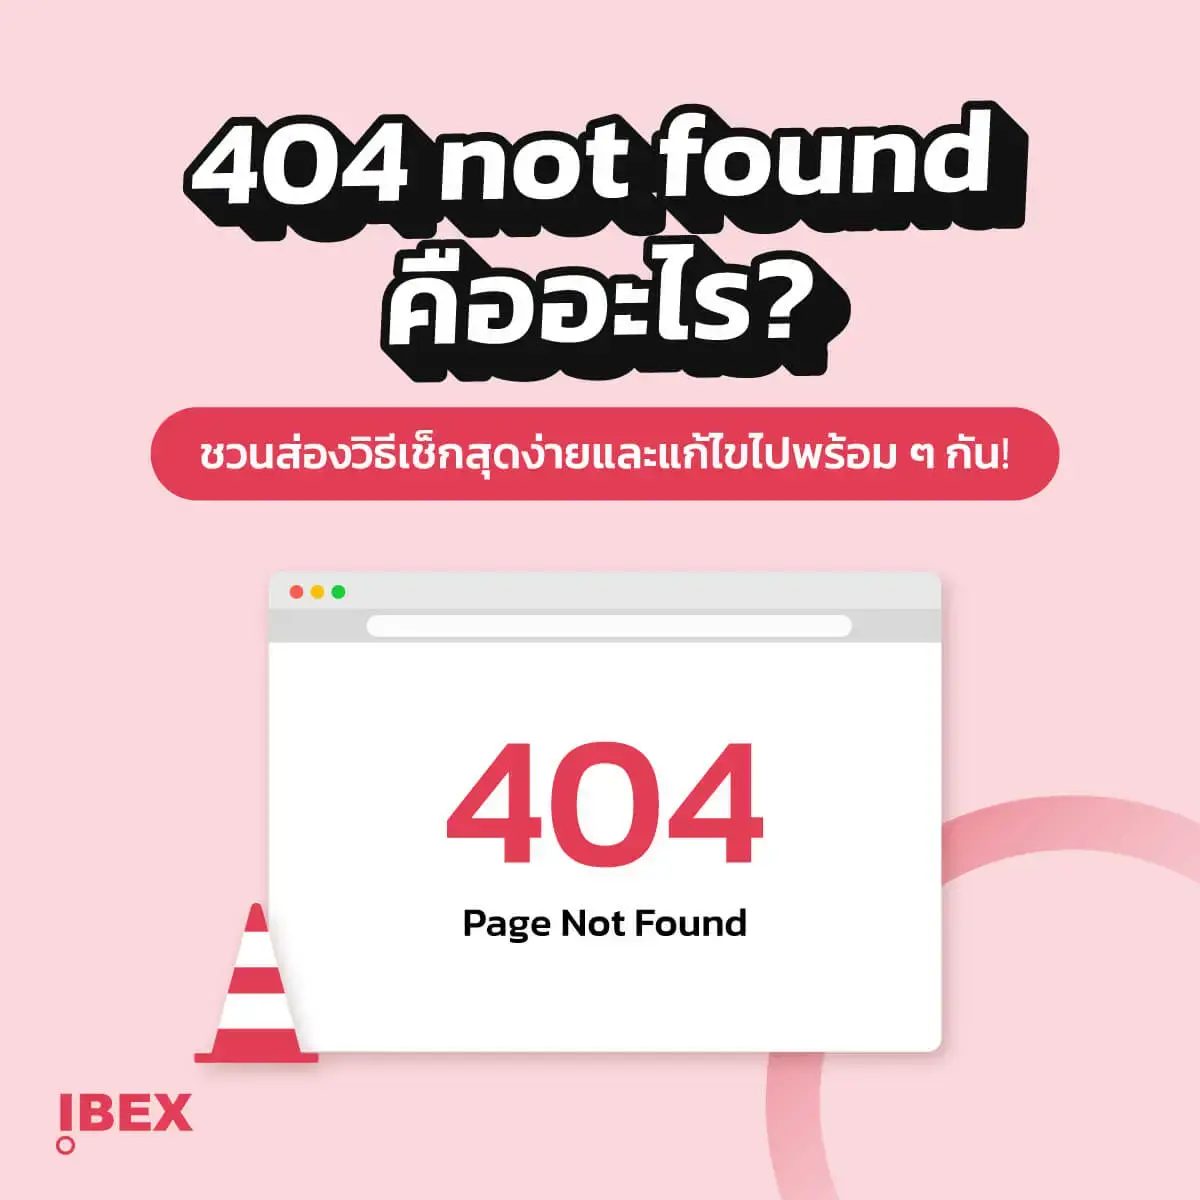 404 page not found คืออะไร? ชวนส่องวิธีเช็กและแก้ไขไปพร้อม ๆ กัน